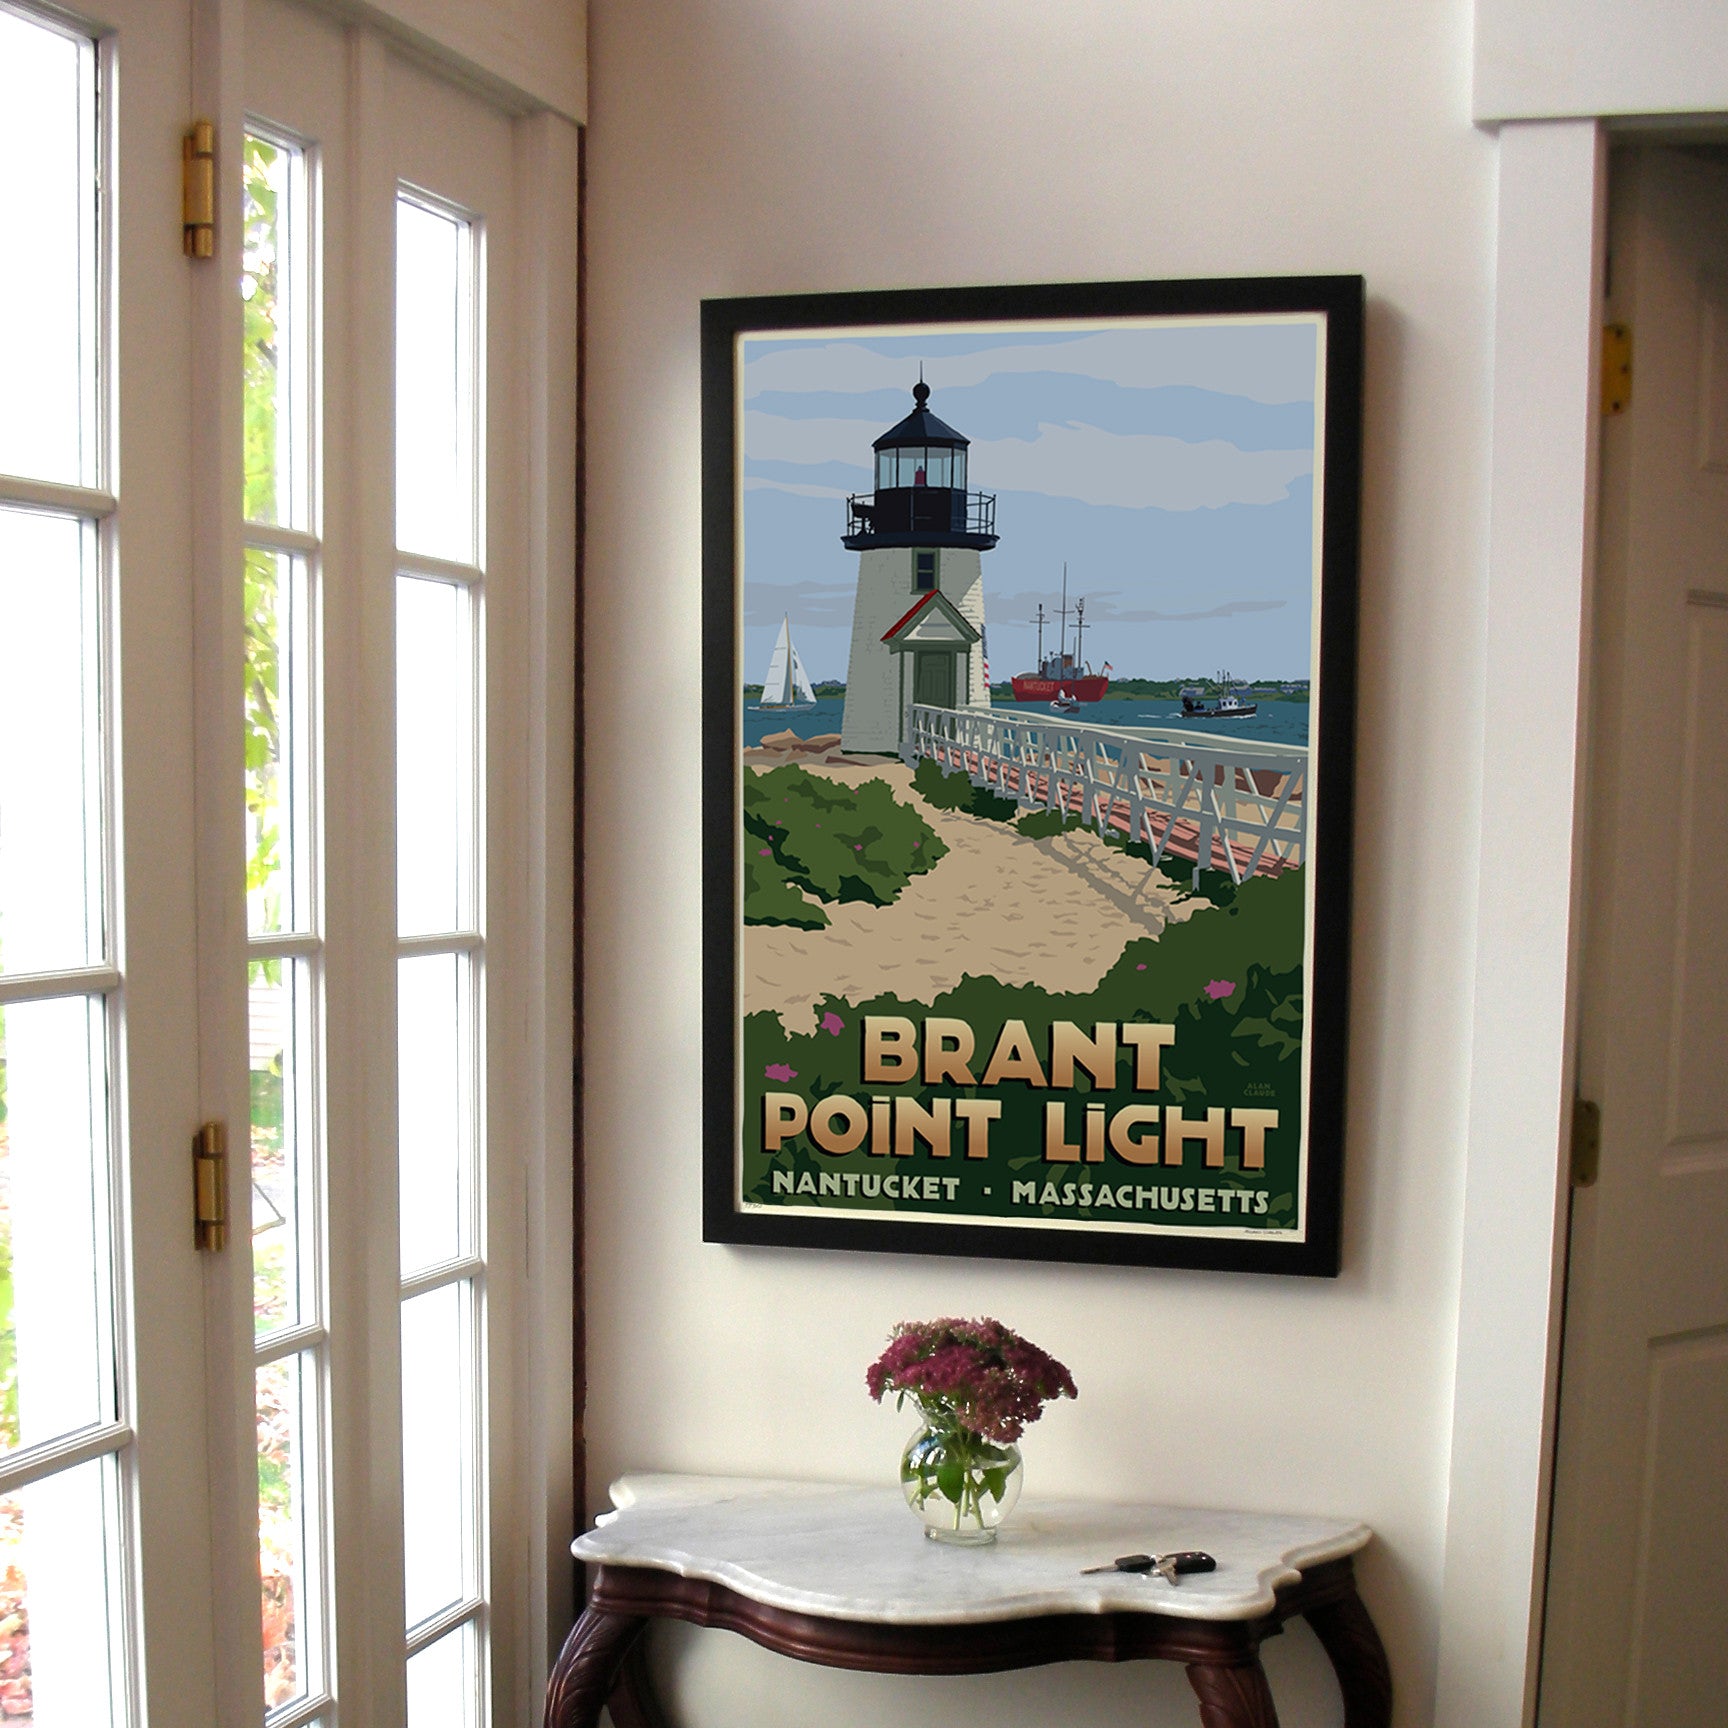 Brant Point Light Art Print 24" x 36" Framed Travel Poster By Alan Claude  - Massachusetts